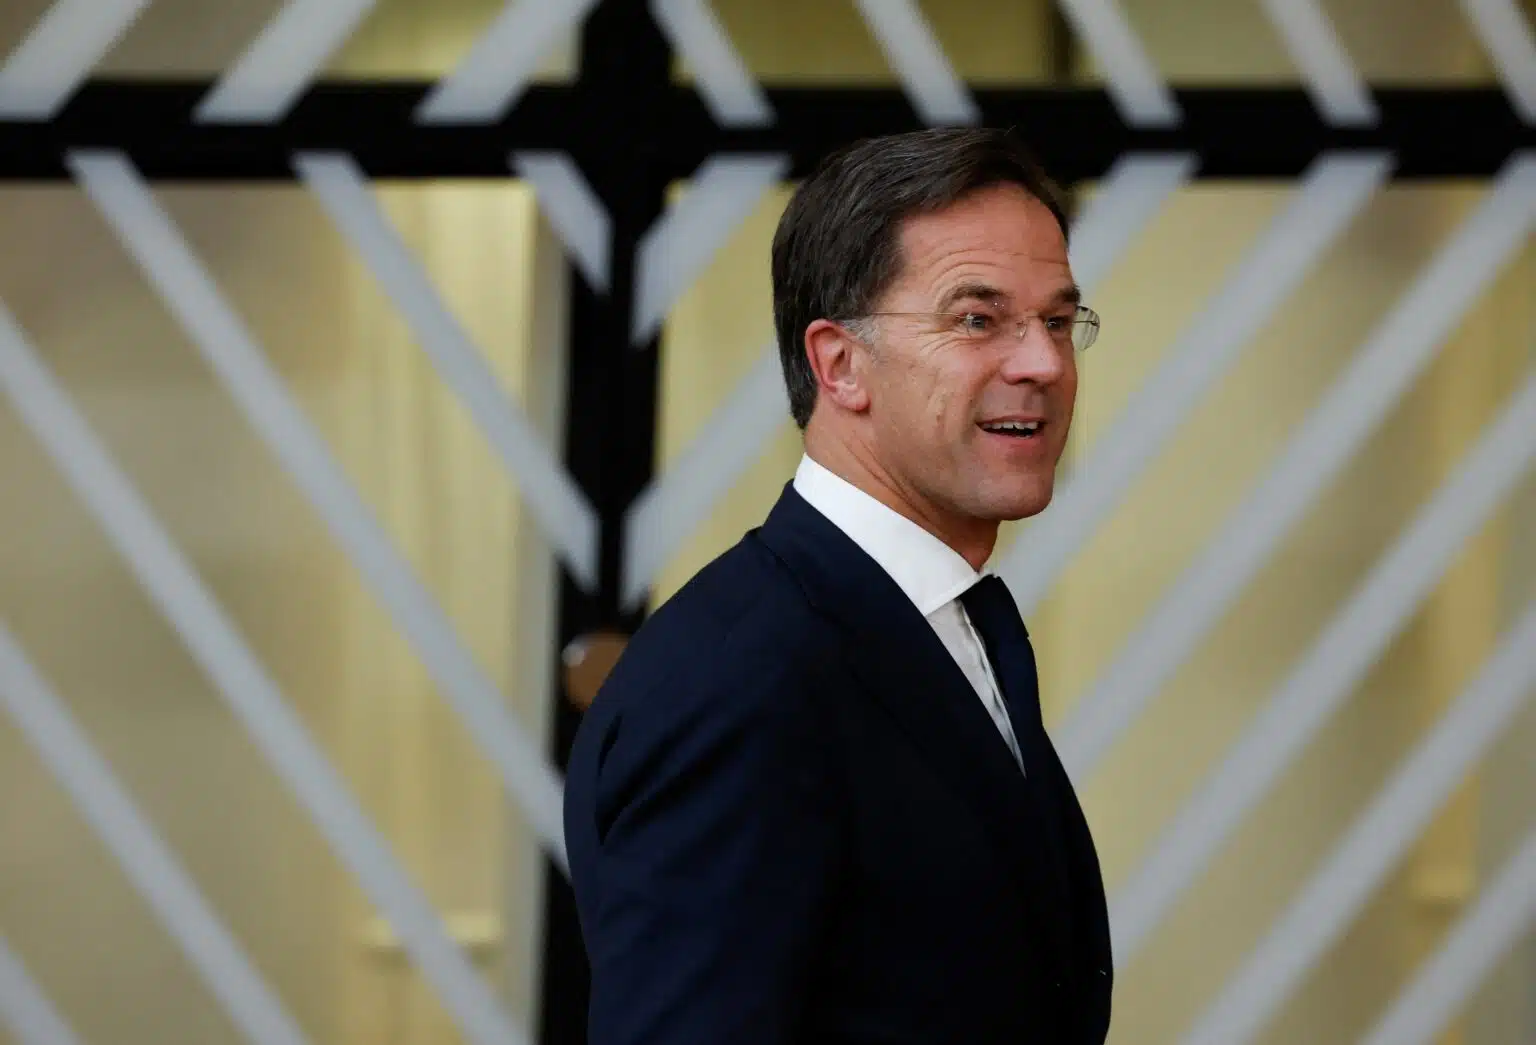 Dutch PM Rutte bold move-a leader's virtue